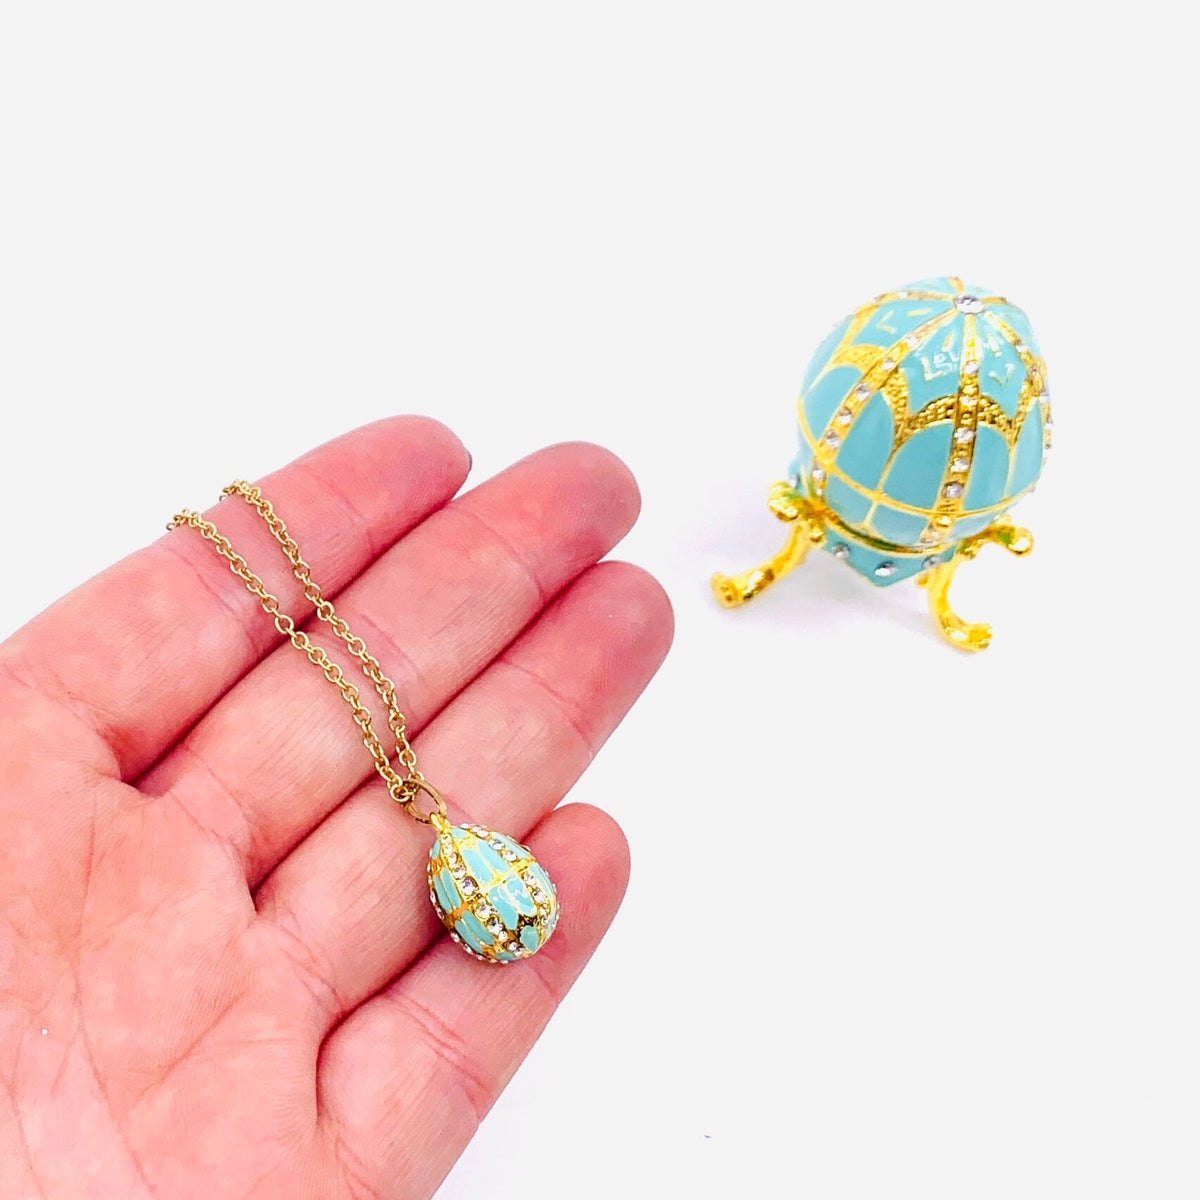 Bejeweled Enamel Trinket Box and Pendant 25, Turquoise Faberge Style Egg Decor Kubla Craft 